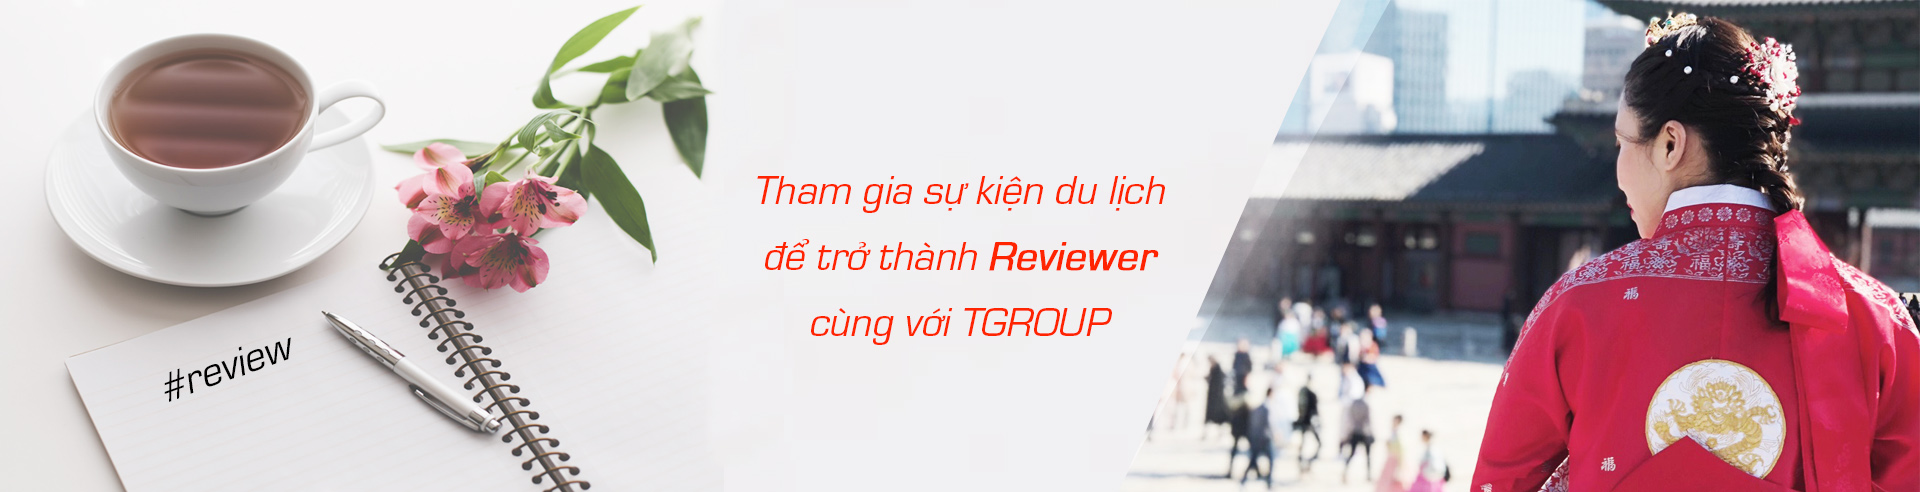 Tham gia sự kiện du lịch  để trở thành reviewer  cùng với TGROUP